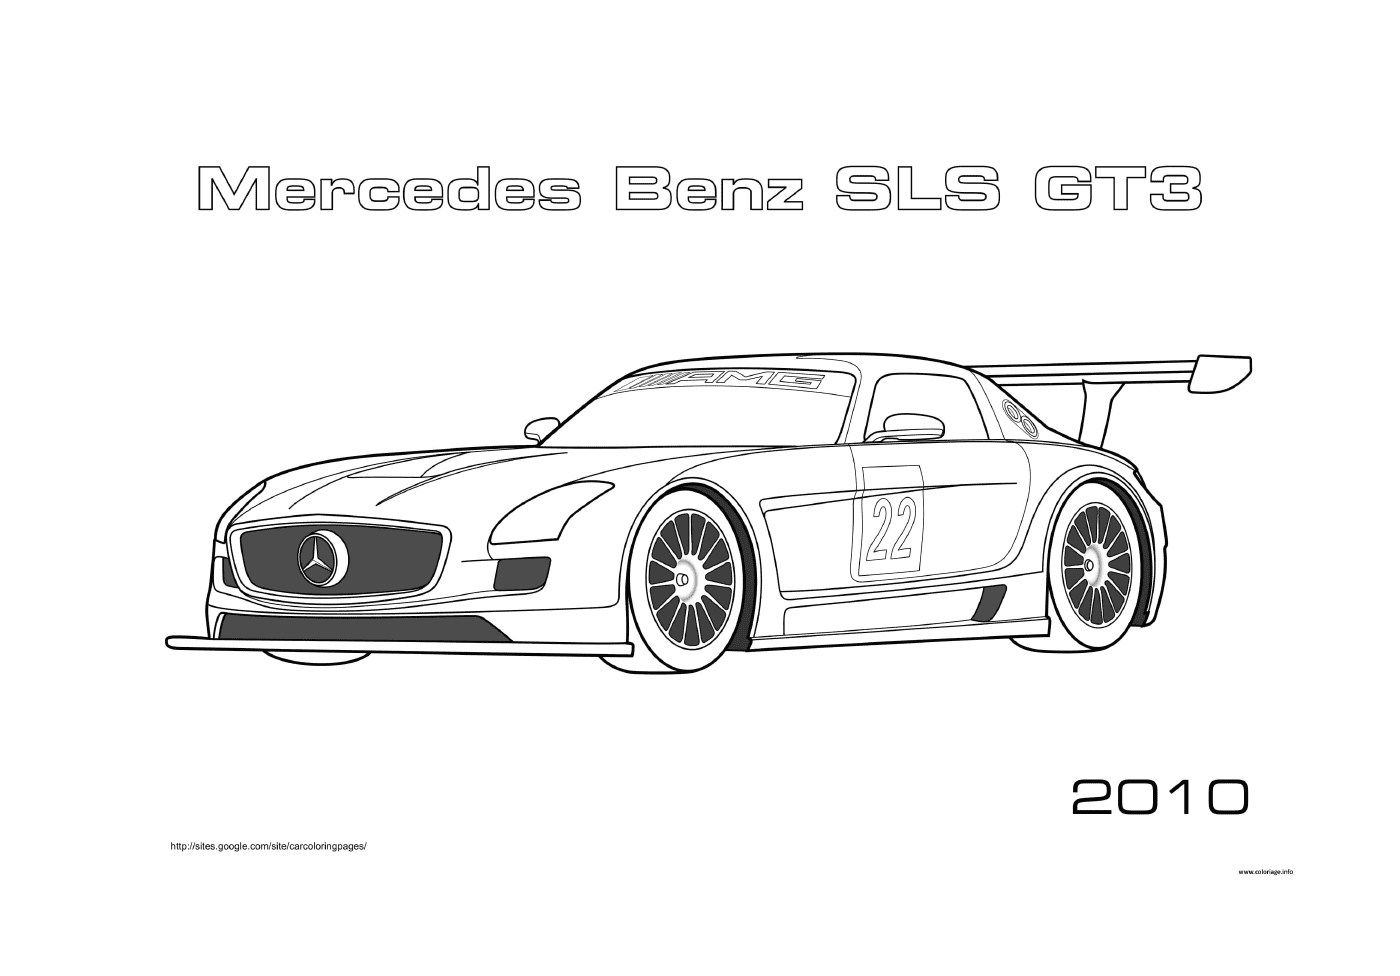  Mercedes-Benz SLS GT3 Rennwagen 